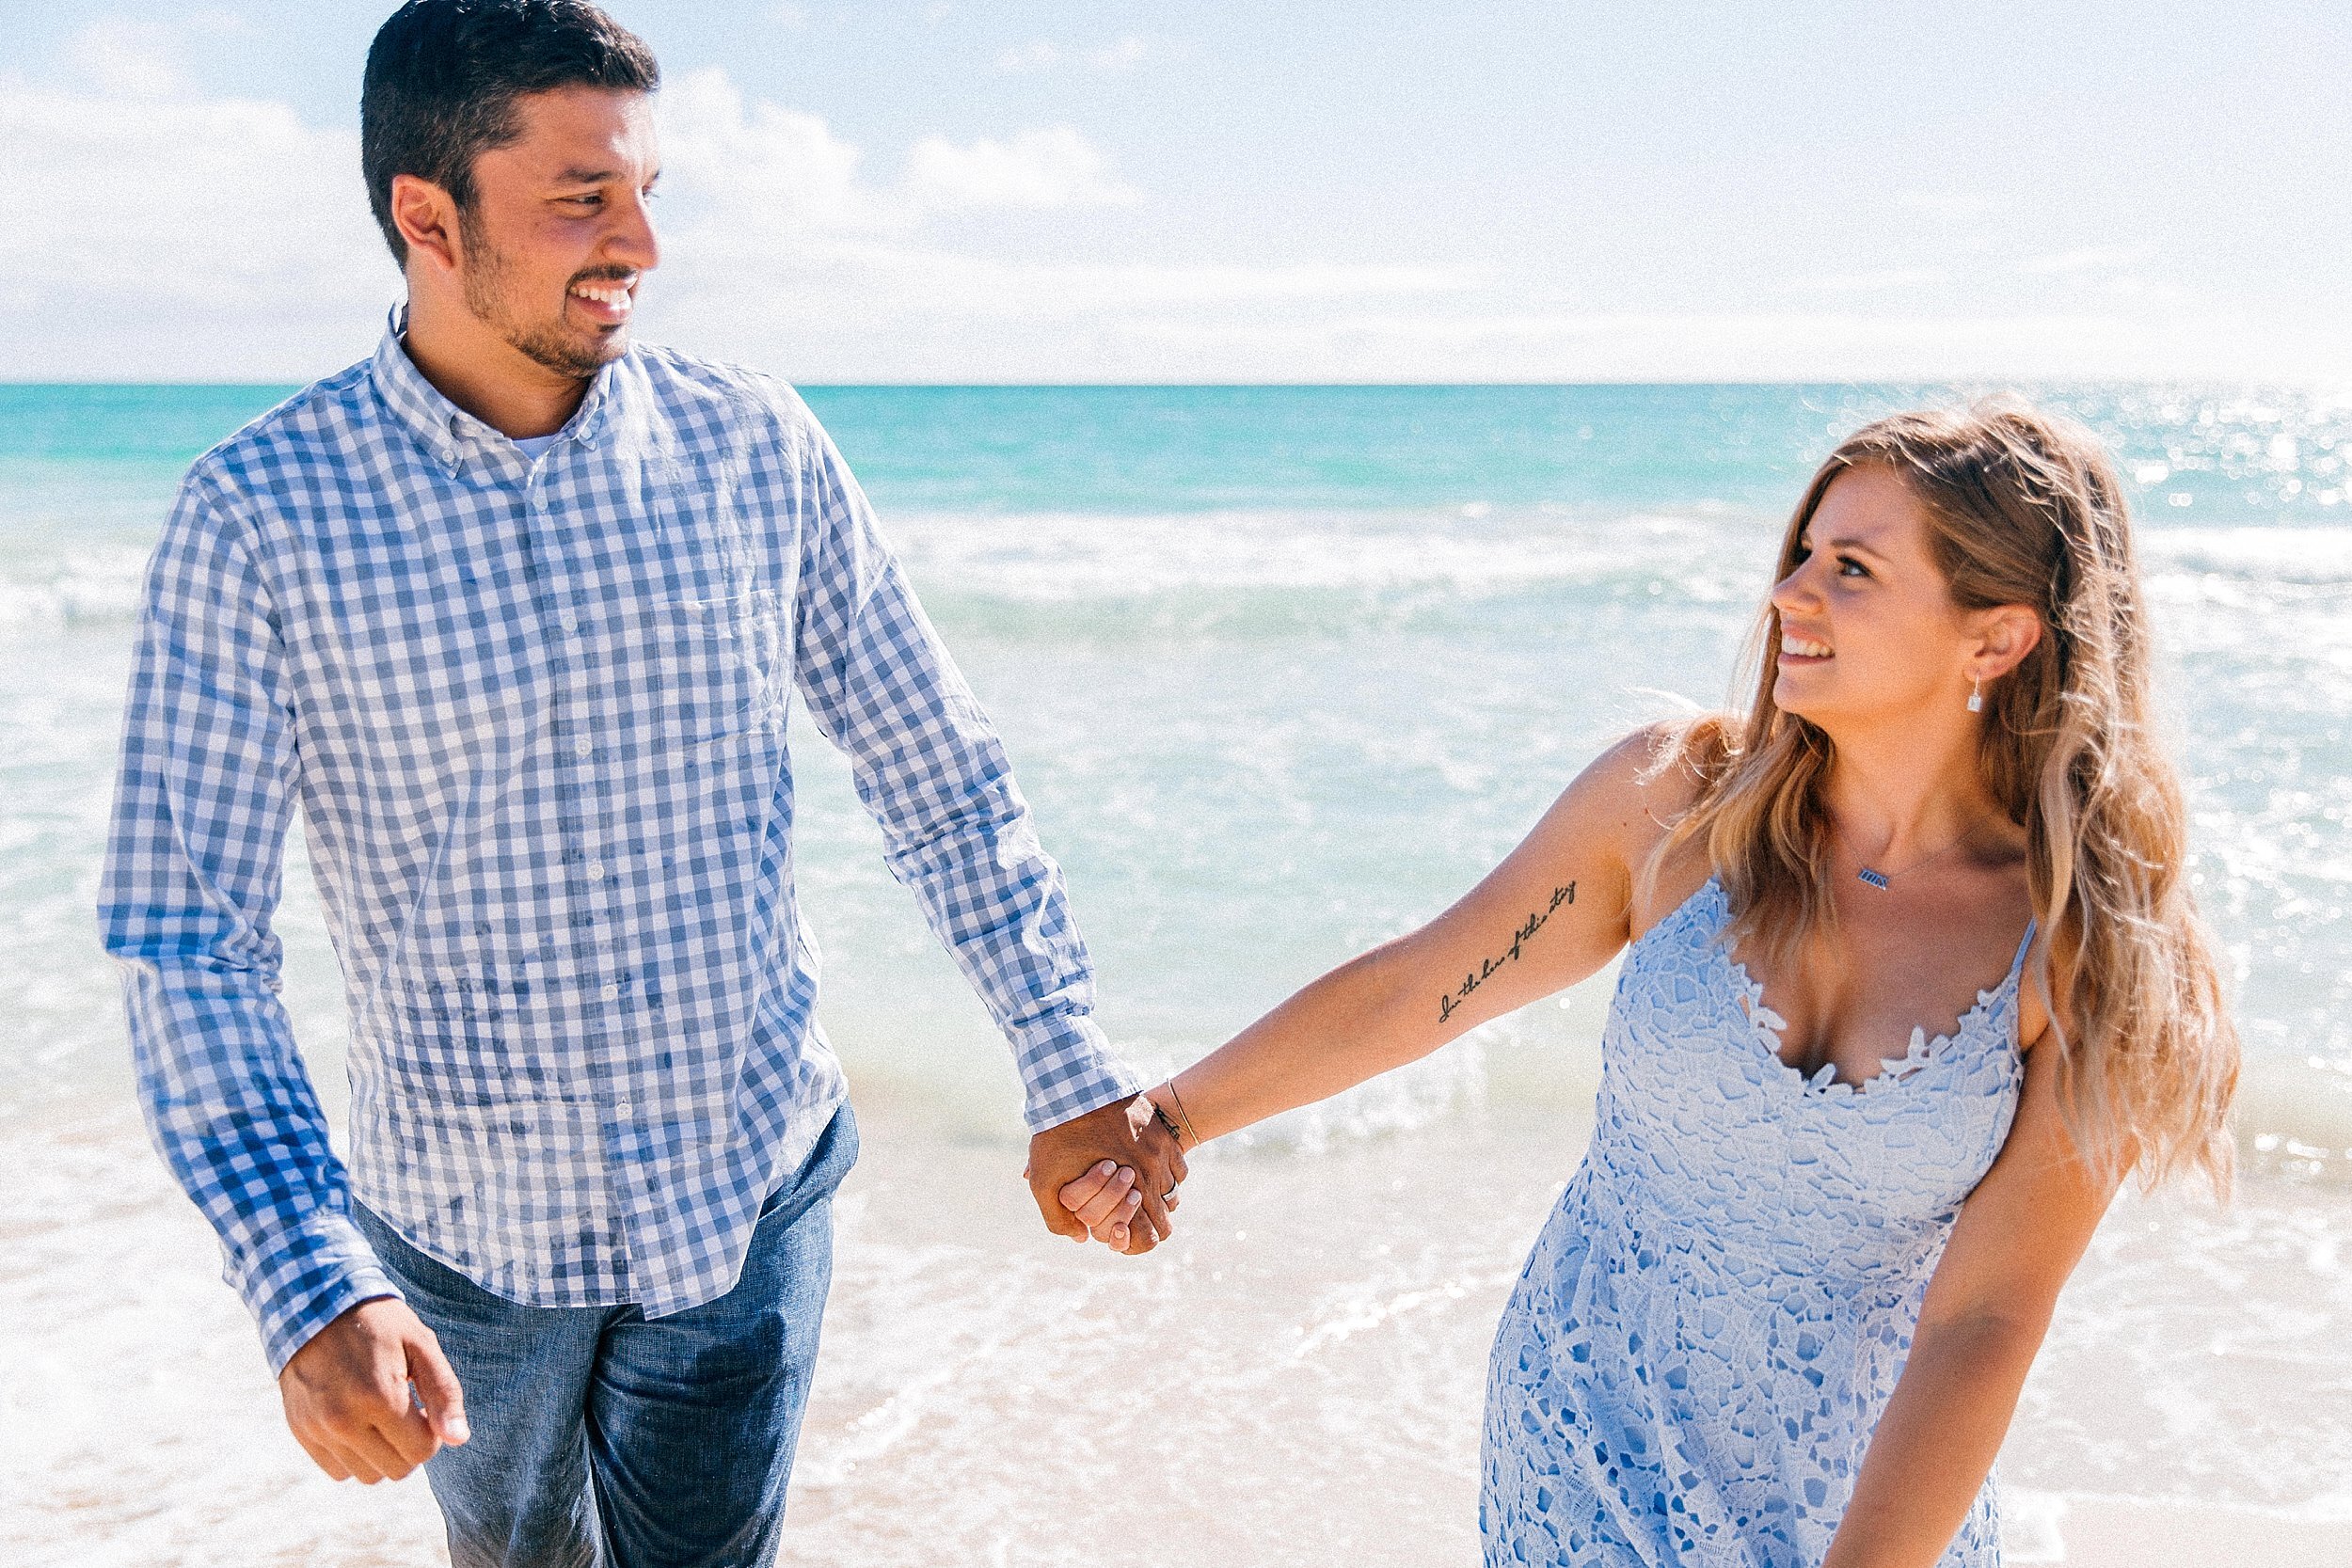  Honeymoon Session in Kailua, Hawaii at Kalama Beach 